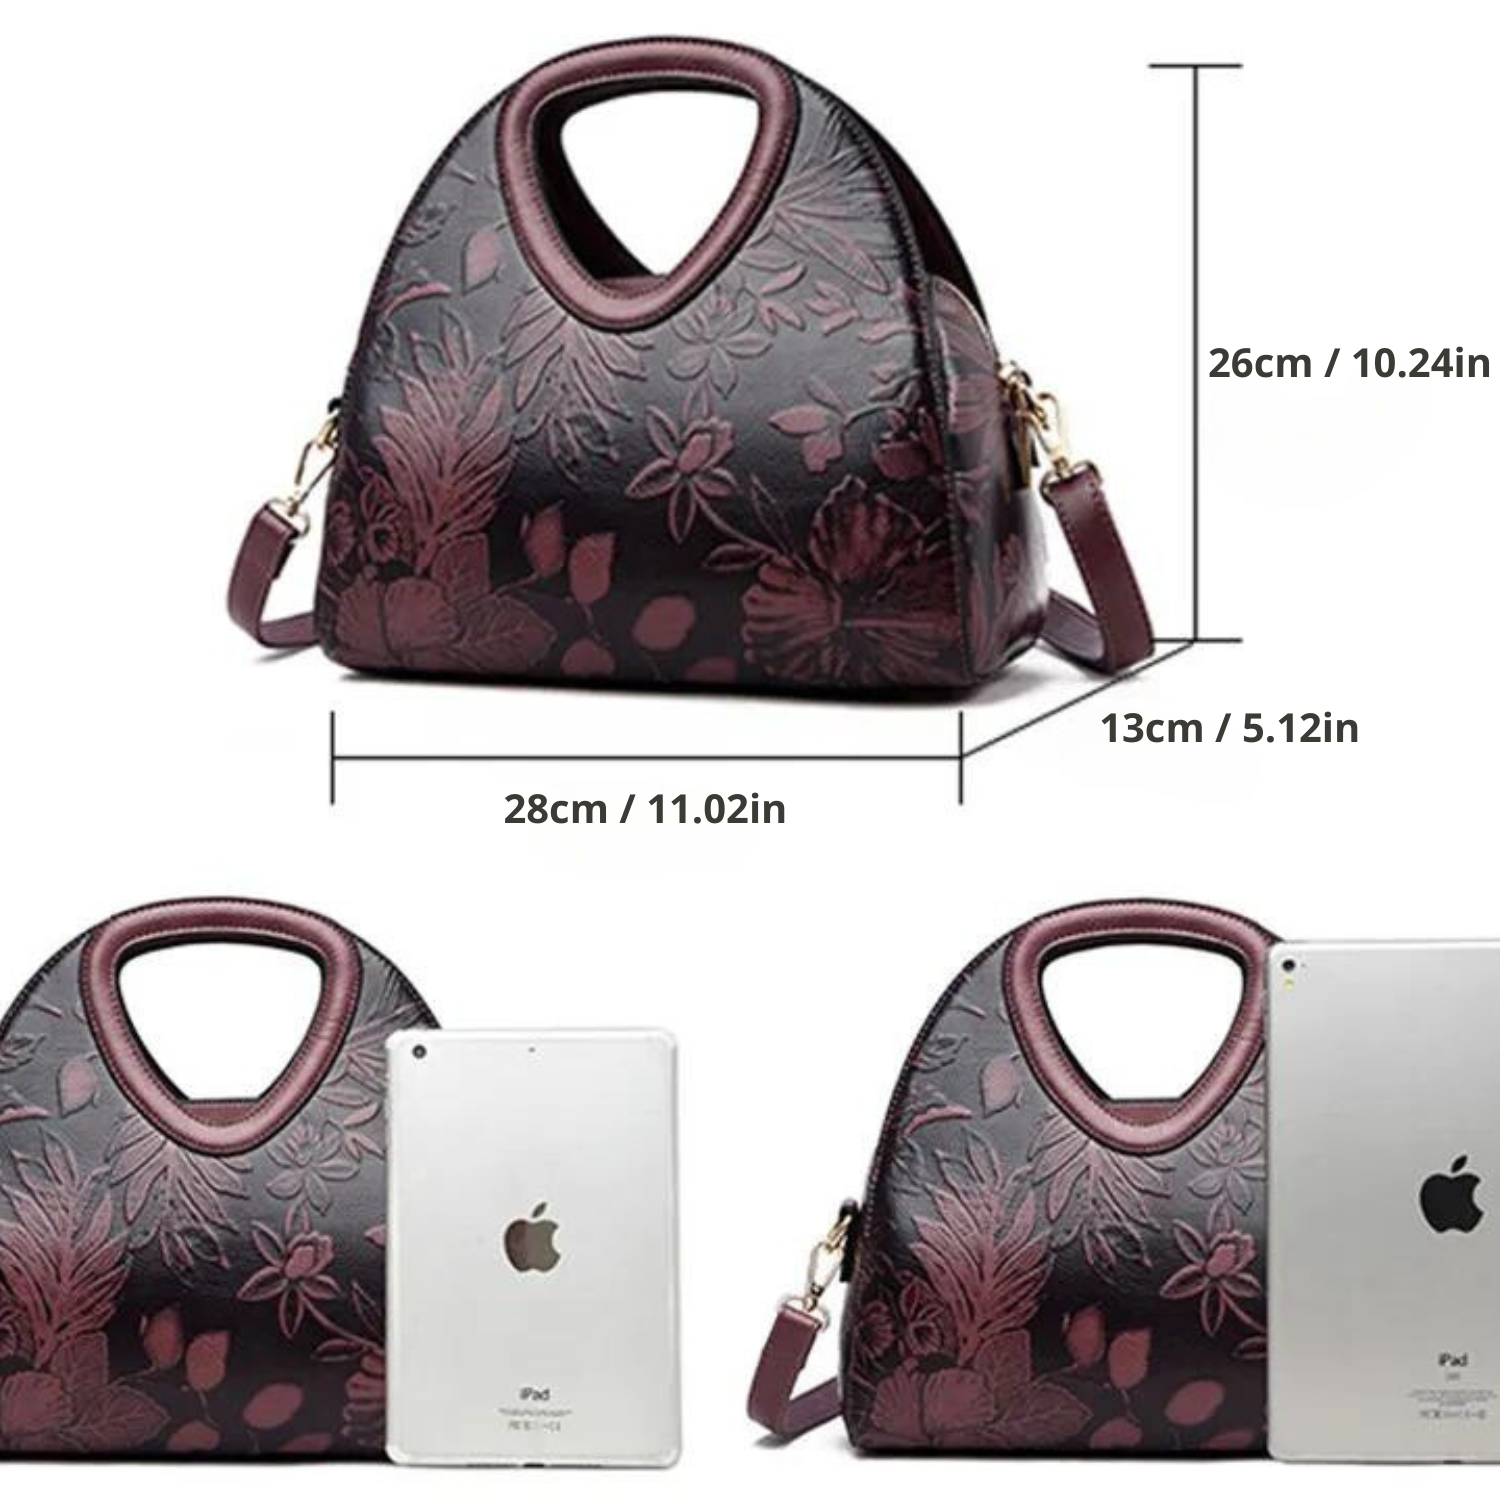 Vanderwah Handbag: Embossed Design with Spacious Luxury